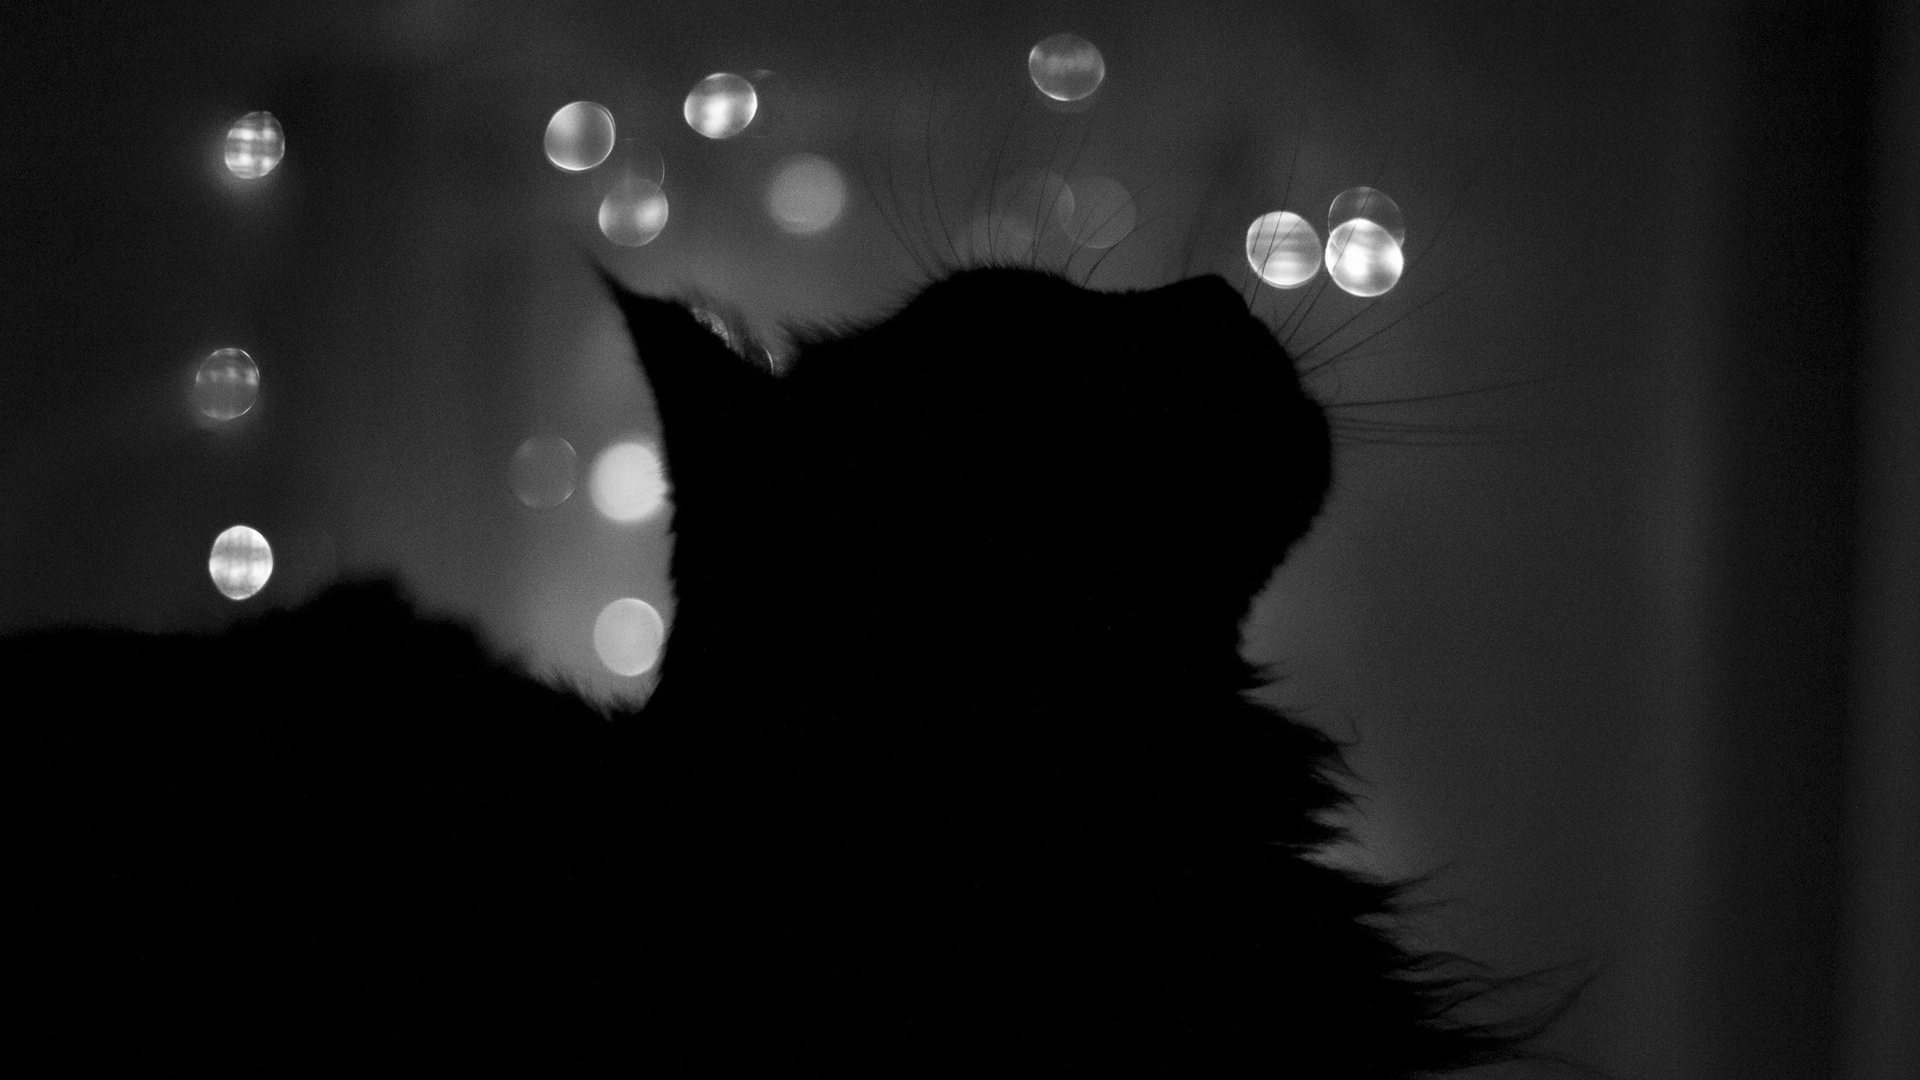 Черный кот в тени